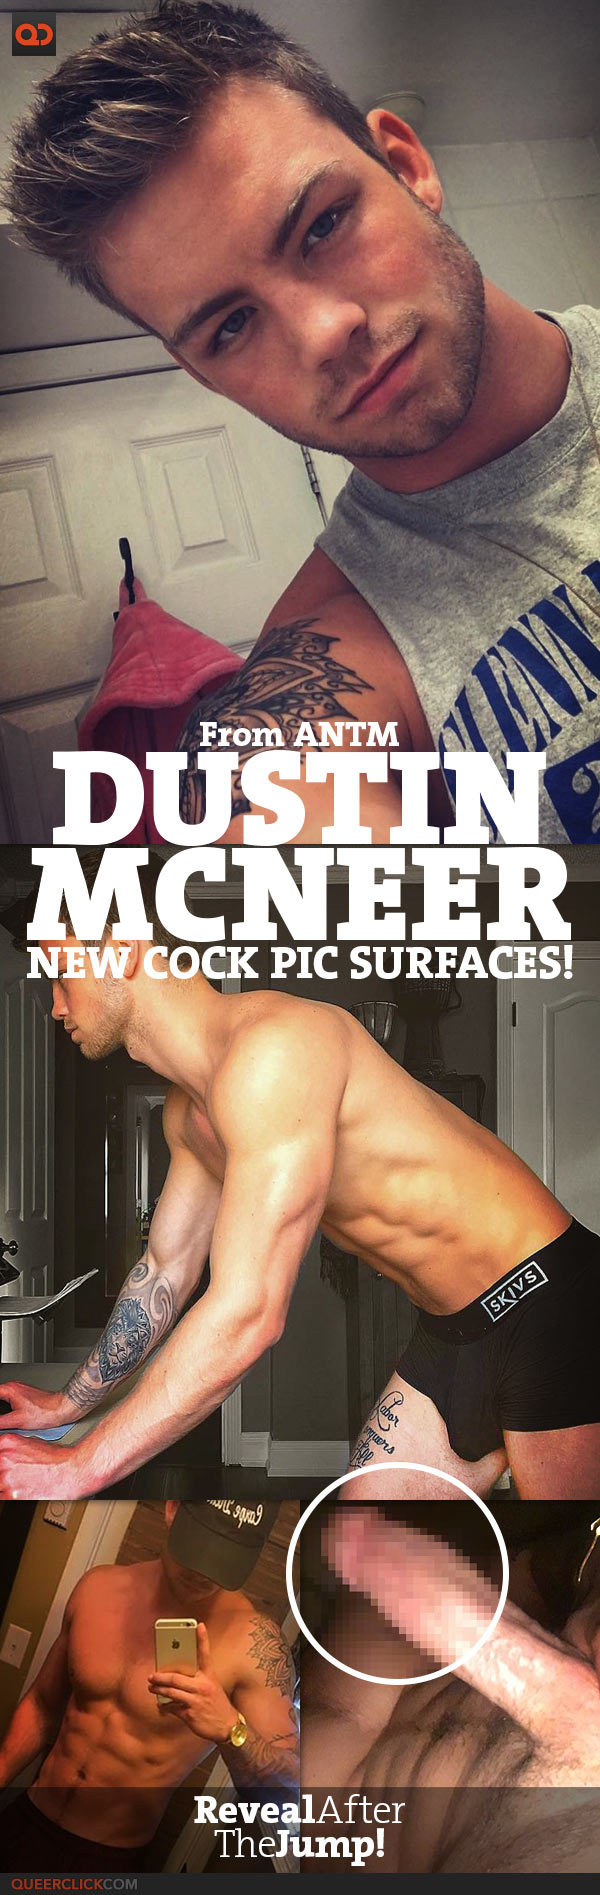 Dustin mcneer naked